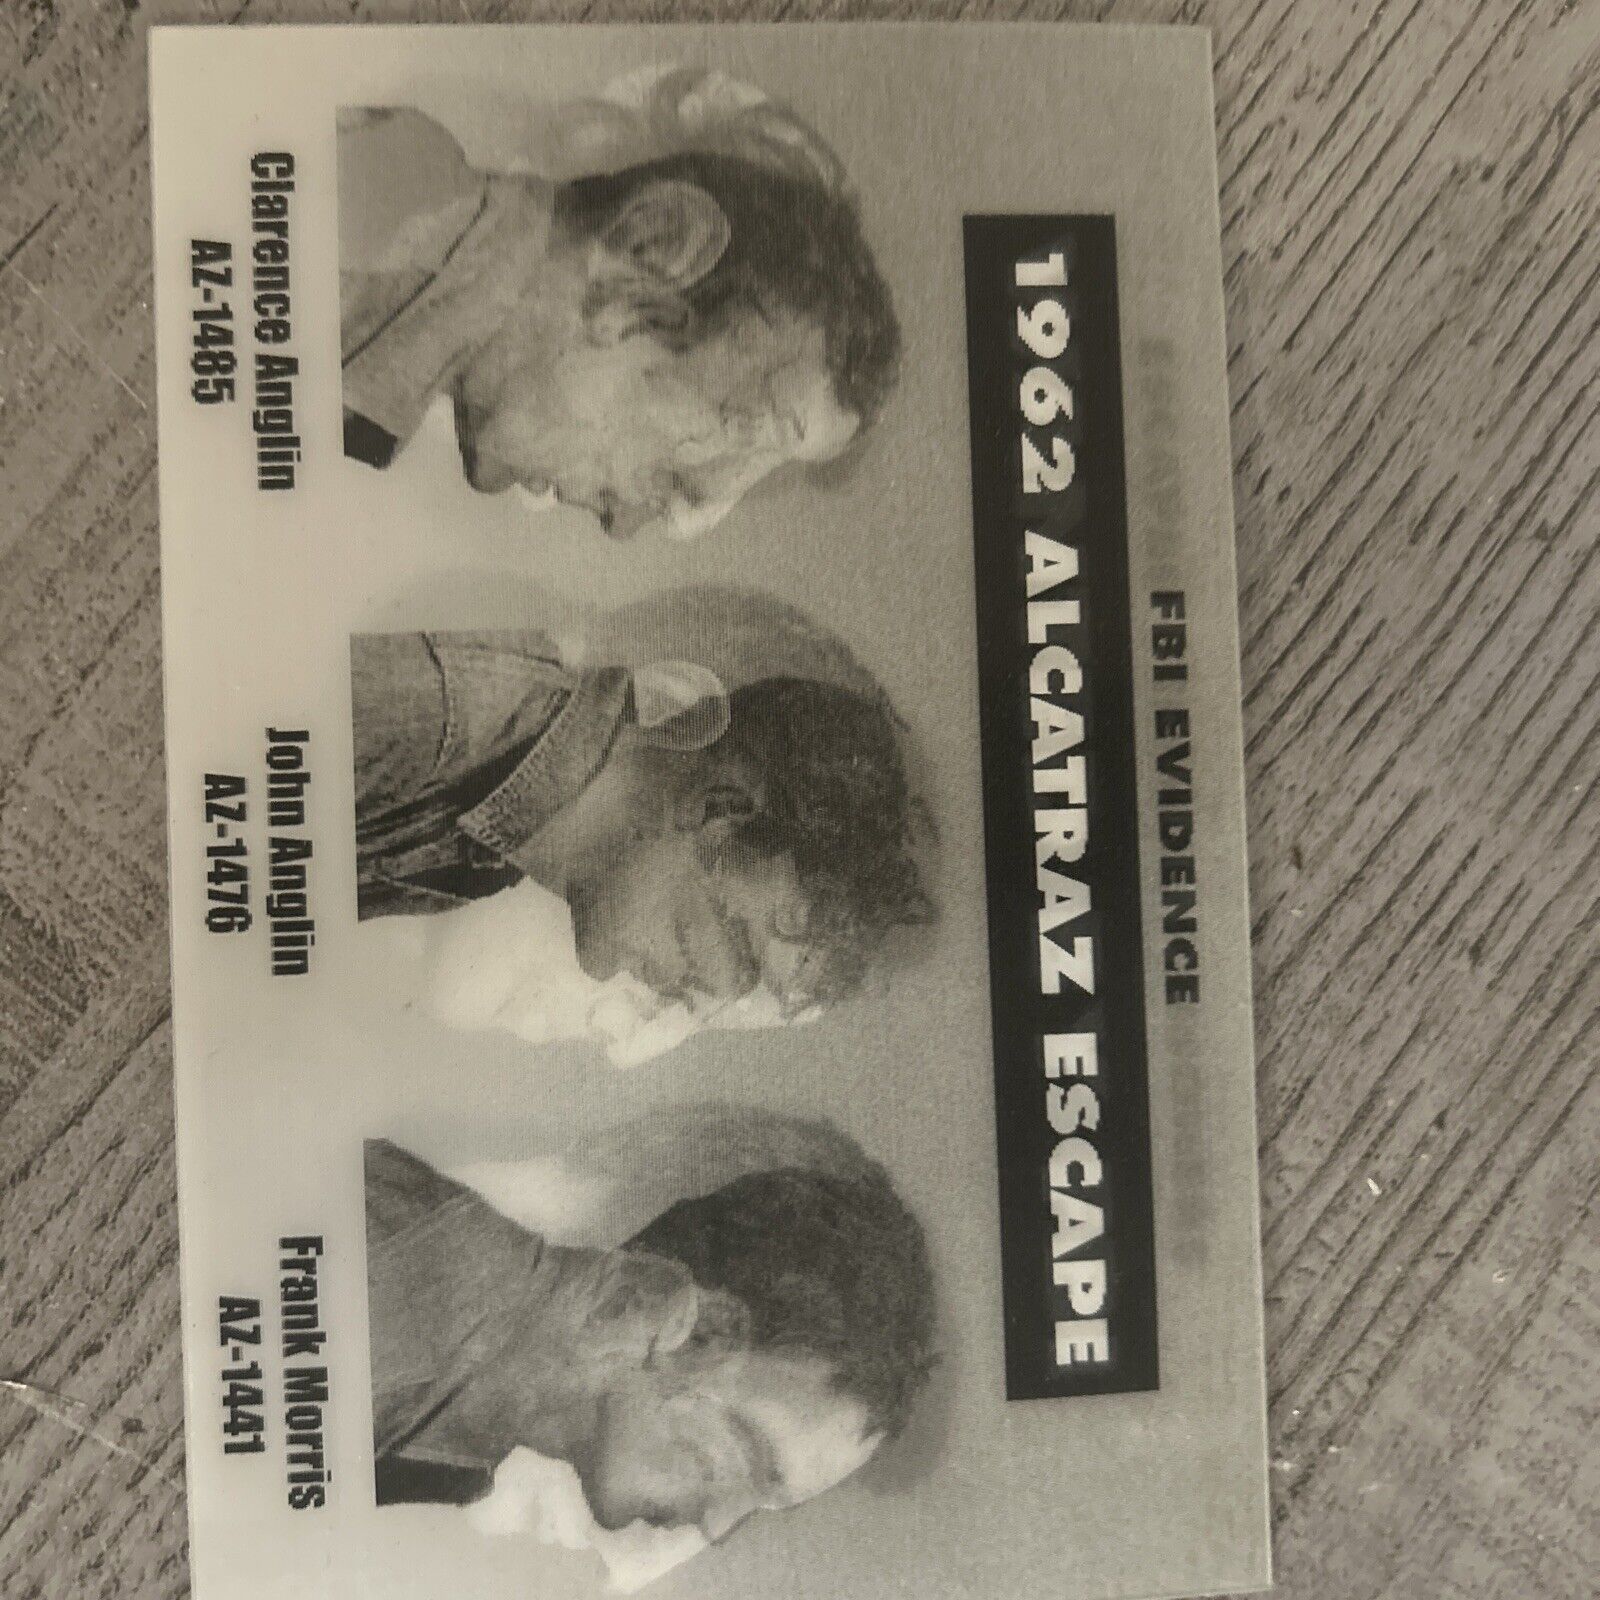 Wanted by FBI Alcatraz postcard